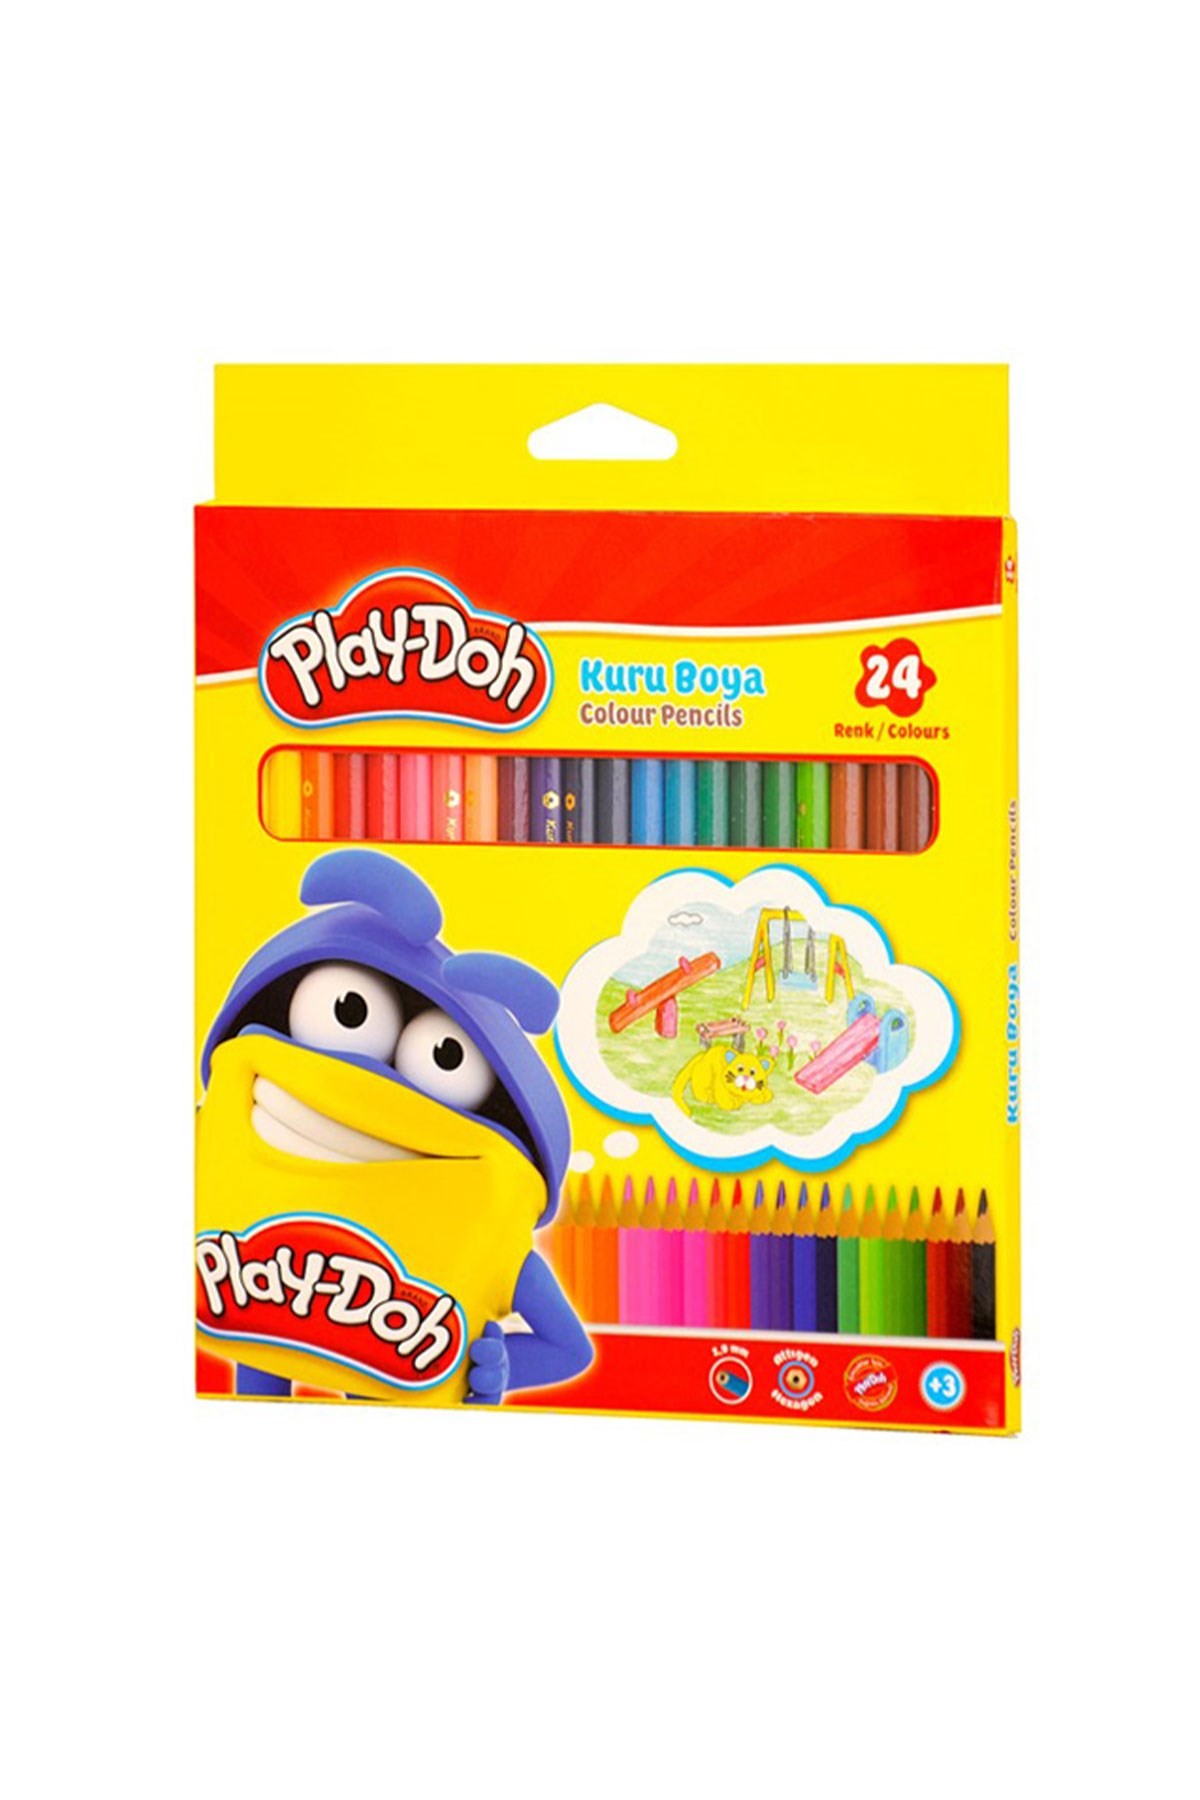 Play-Doh Kuru Boya 24 Renk